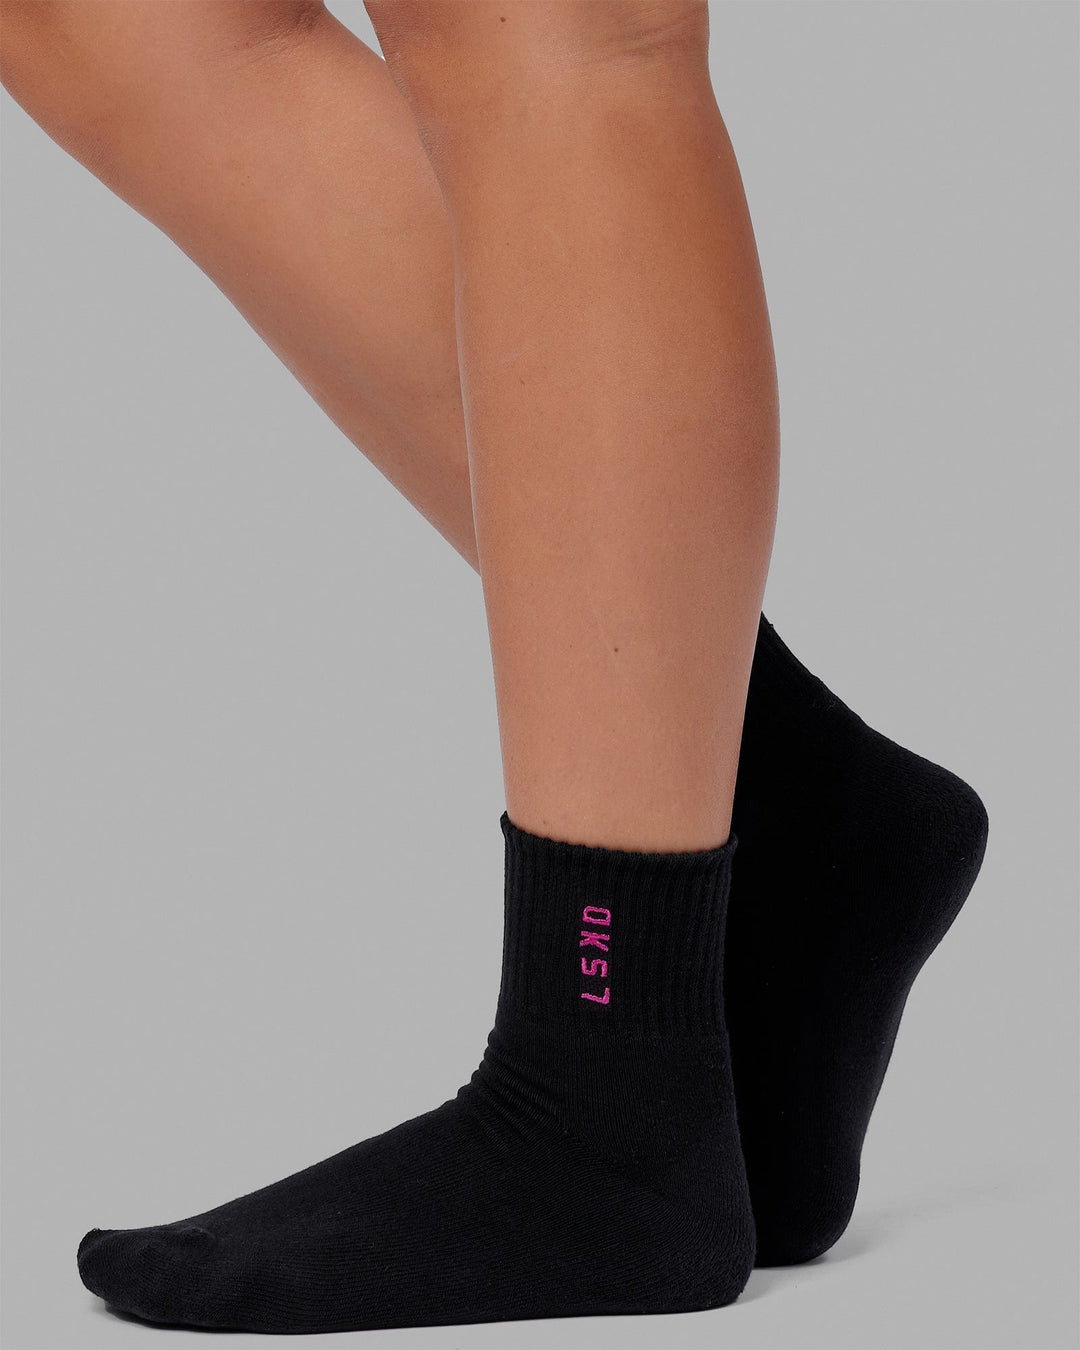 Women's Quarter Socks 4-Pack curated on LTK